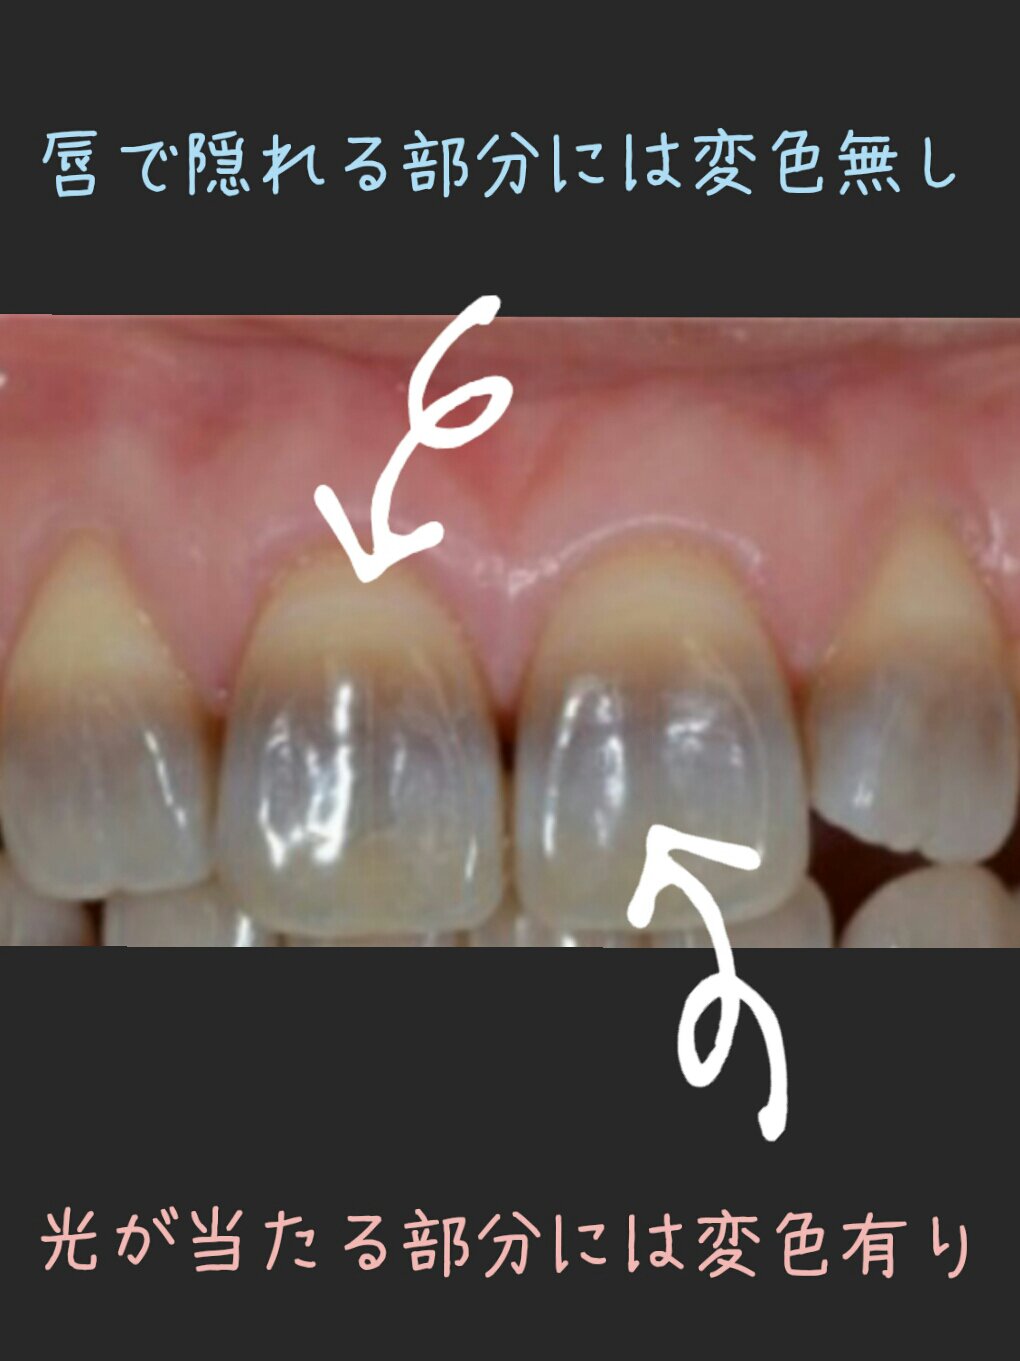 テトラサイクリン歯について